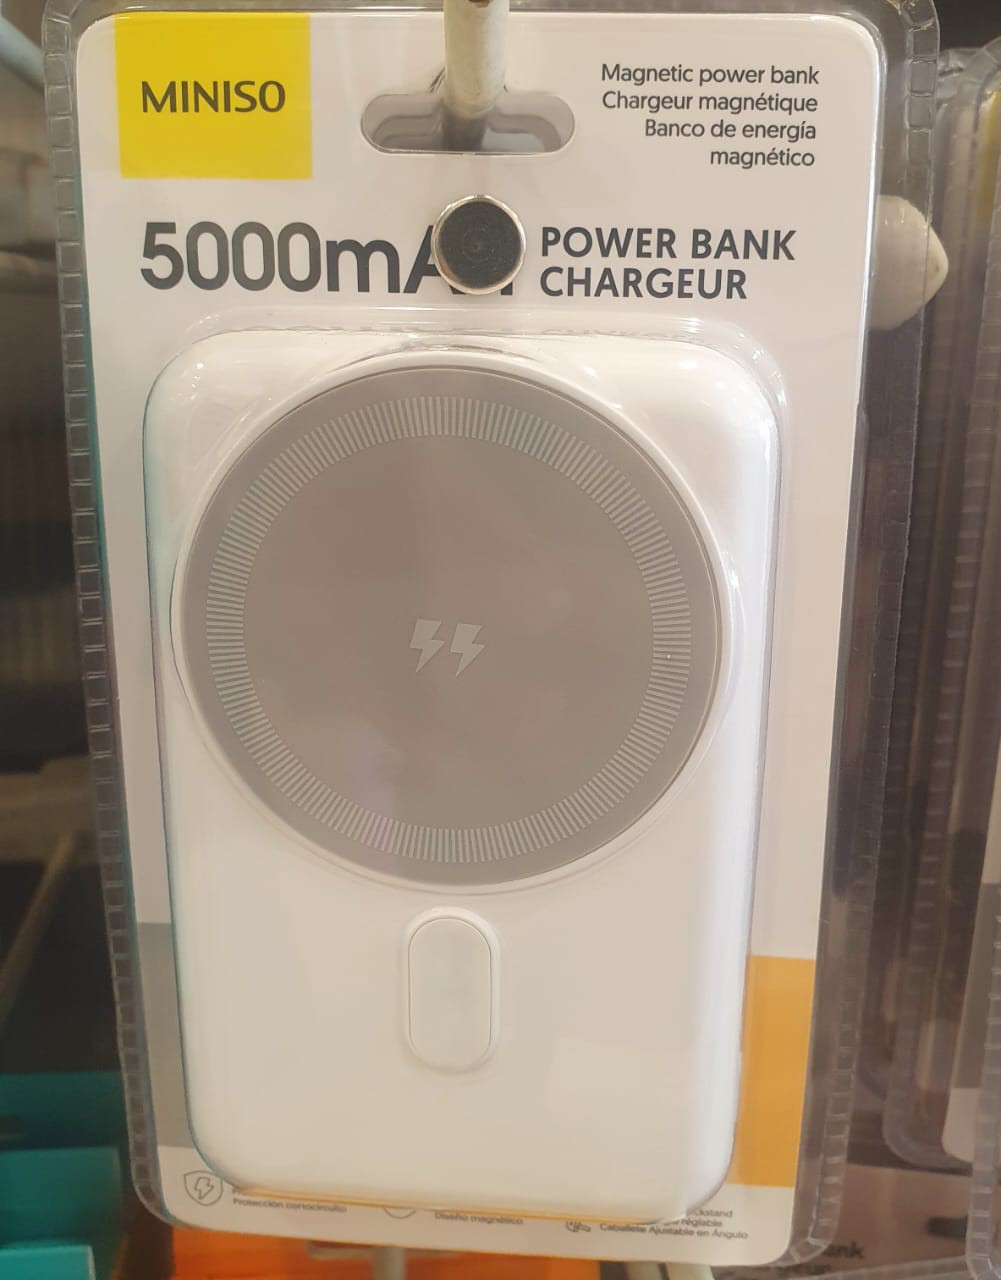 ພາວເວີ້ແບັງ Power Bank Chargeur ຍີ່ຫໍ້: MINISO ລຸ້ນ: 5000mAh. ສາກເຂົ້າໄວ ແລະ ສະຖຽນ ເປັນແບັດສຳຮອງທີ່ດີ ບັນຈຸໄດ້ຫຼາຍ ພົກພາງ່າຍ 